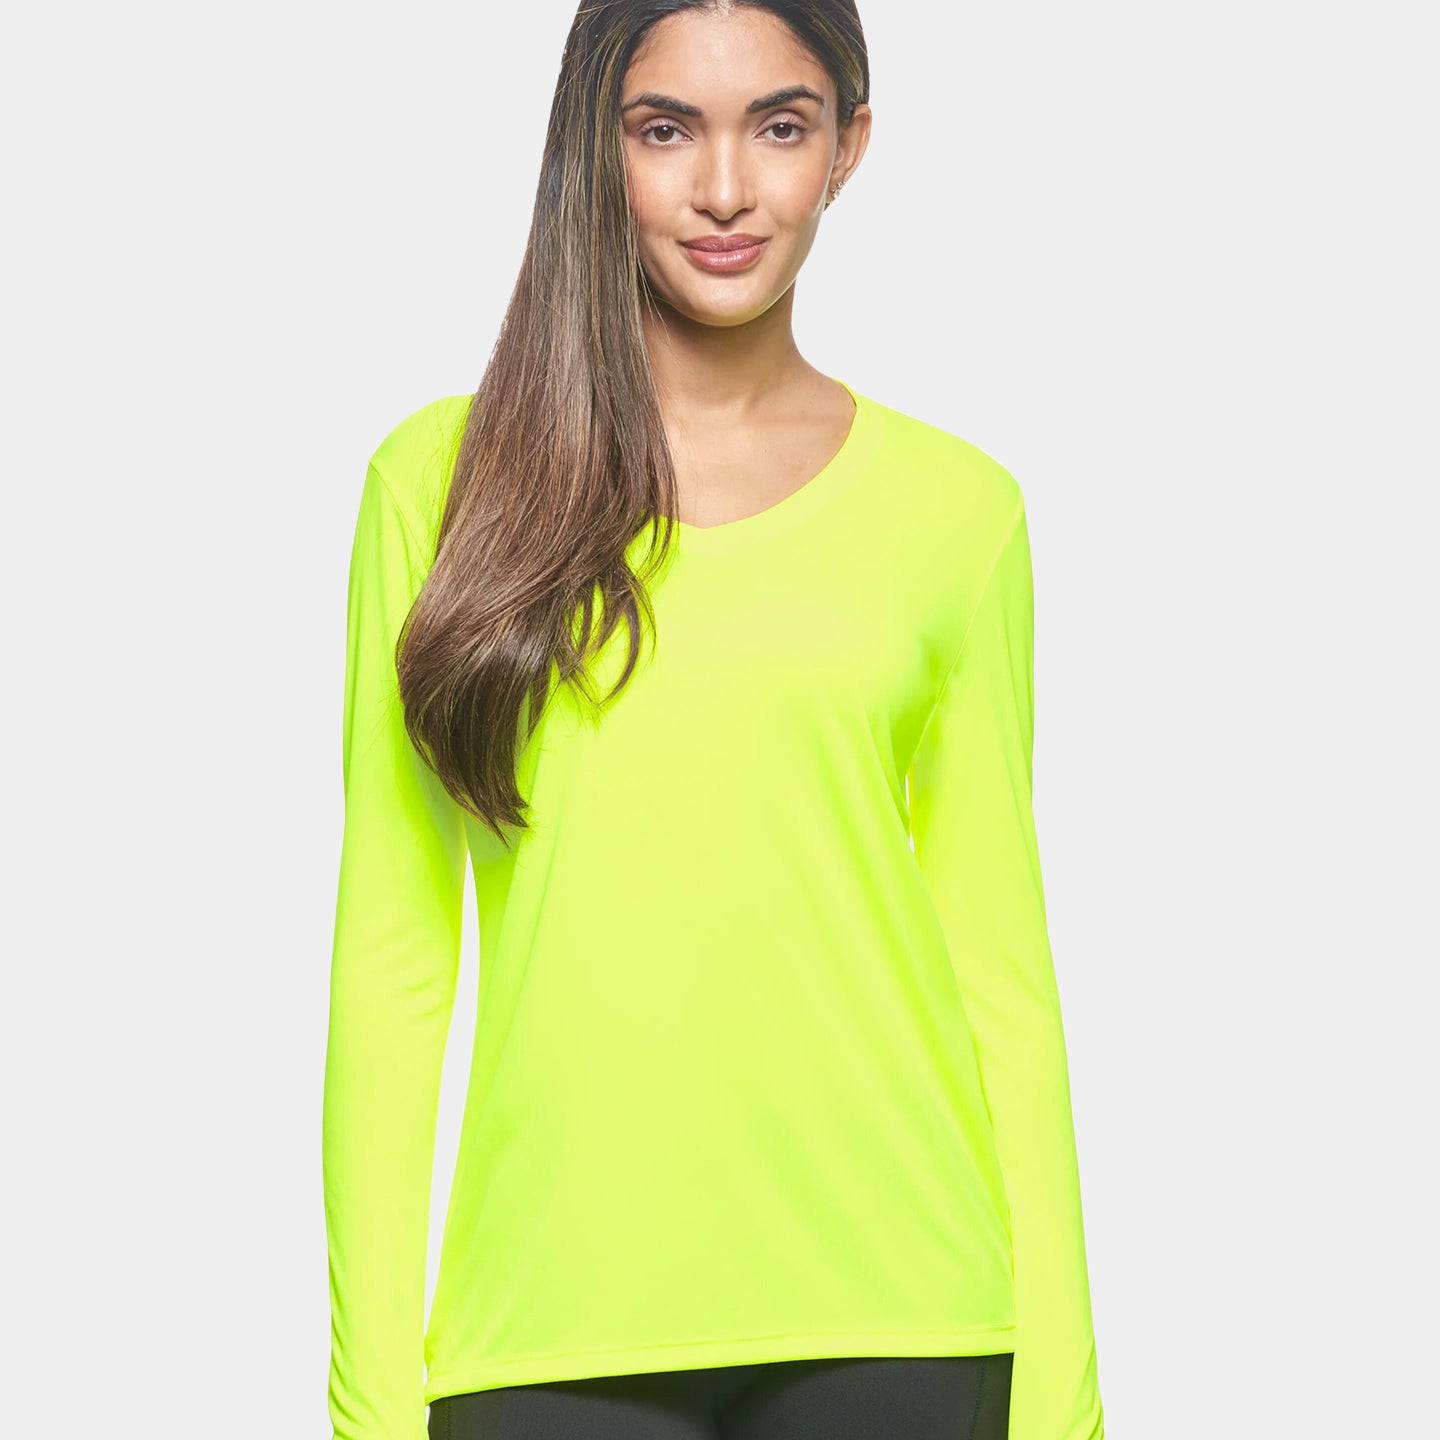 Expert Brand DriMax Women's Performance V-Neck Long Sleeve Shirt, 3XL, Yellow A1